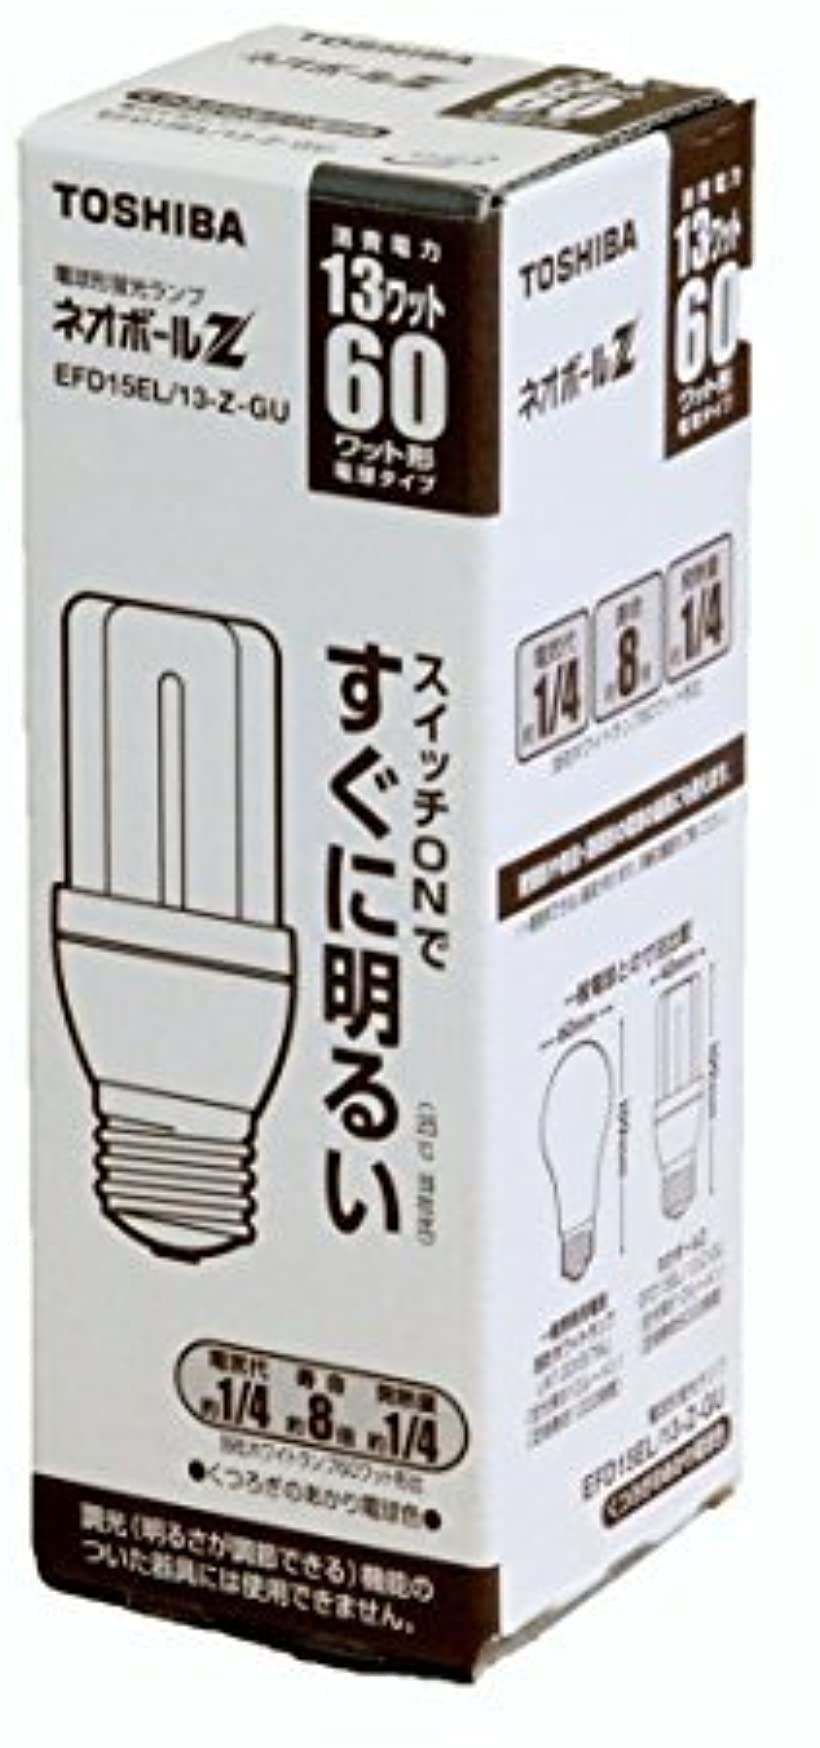 新作多数 東芝 お洒落 TOSHIBA ネオボールZ 電球60ワットタイプ 電球形蛍光ランプ 電球色